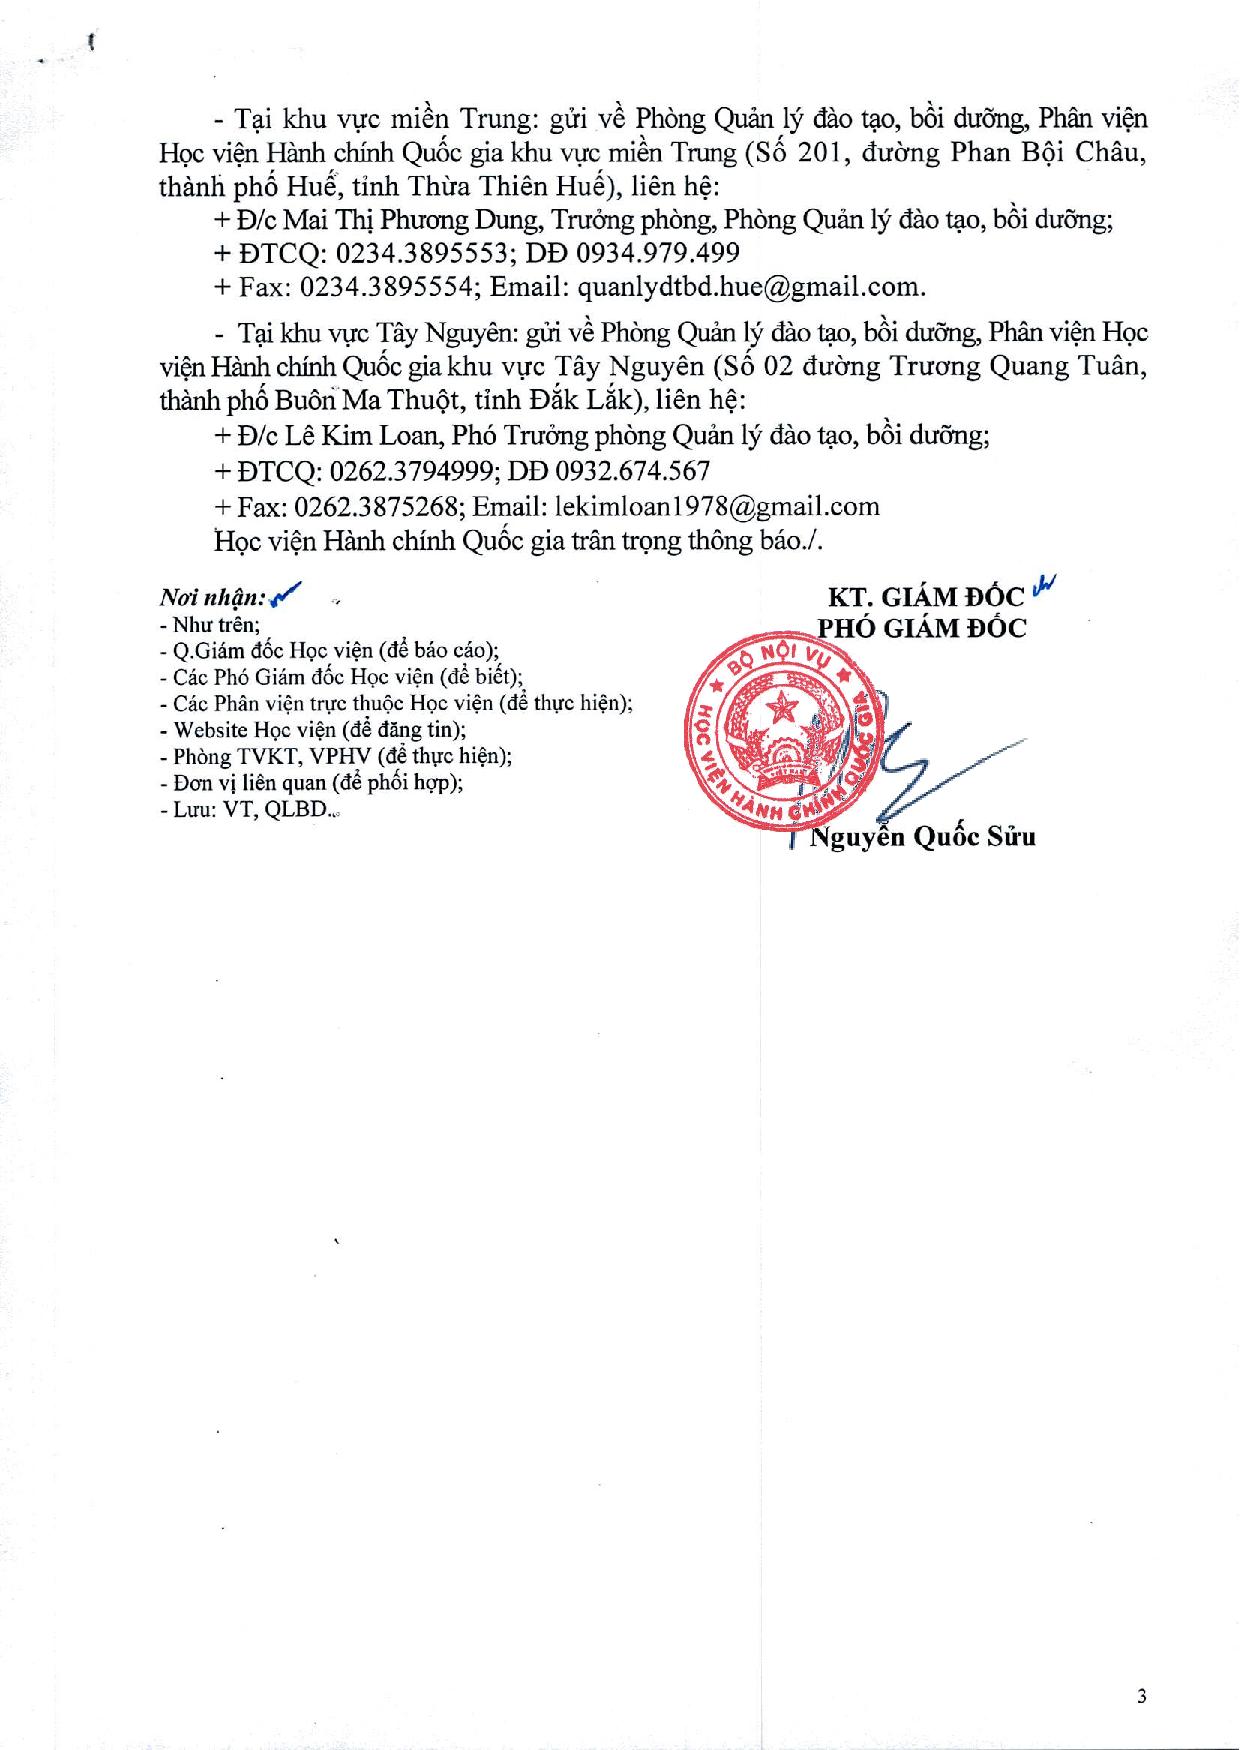 CV chieu sinh BD dai bieu HDND cap huyen, xa 2021-2026_0001-page-003